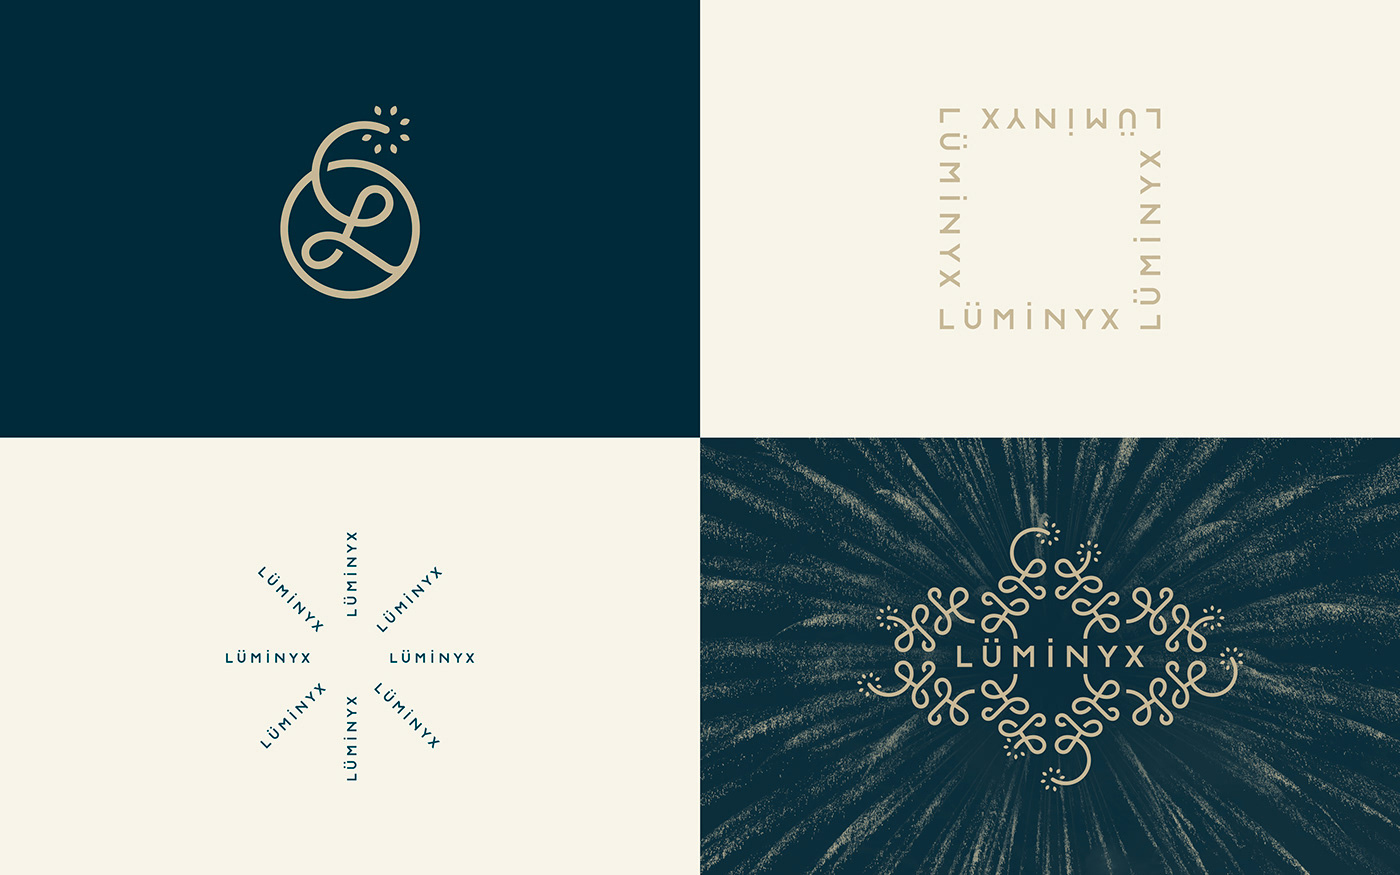 Logomarks and variations for Luminyx Branding